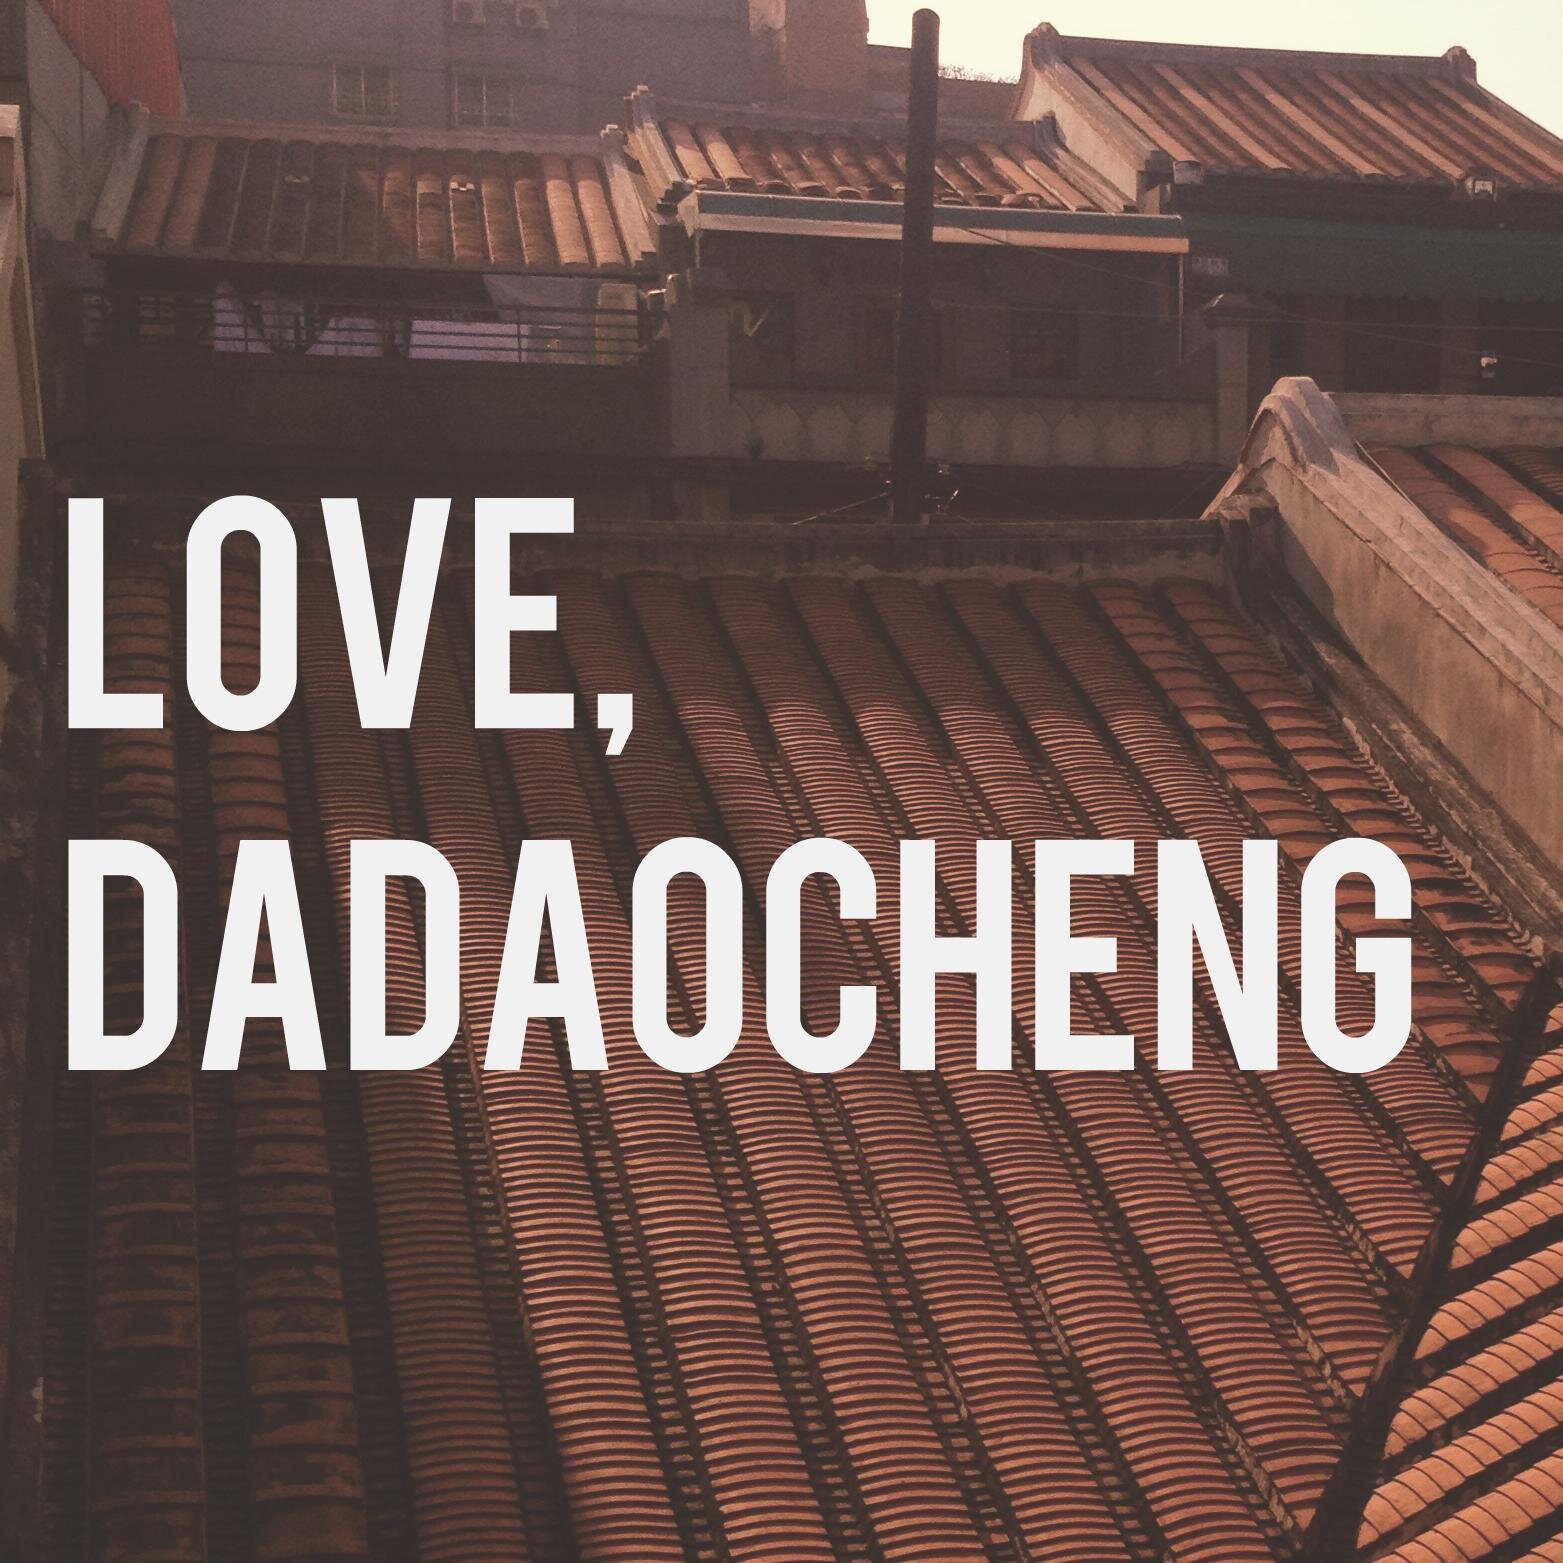 愛，大稻埕 :: Highlighting the sights, sounds, and smells of historic Dadaocheng  #Taipei #Taiwan #Travel